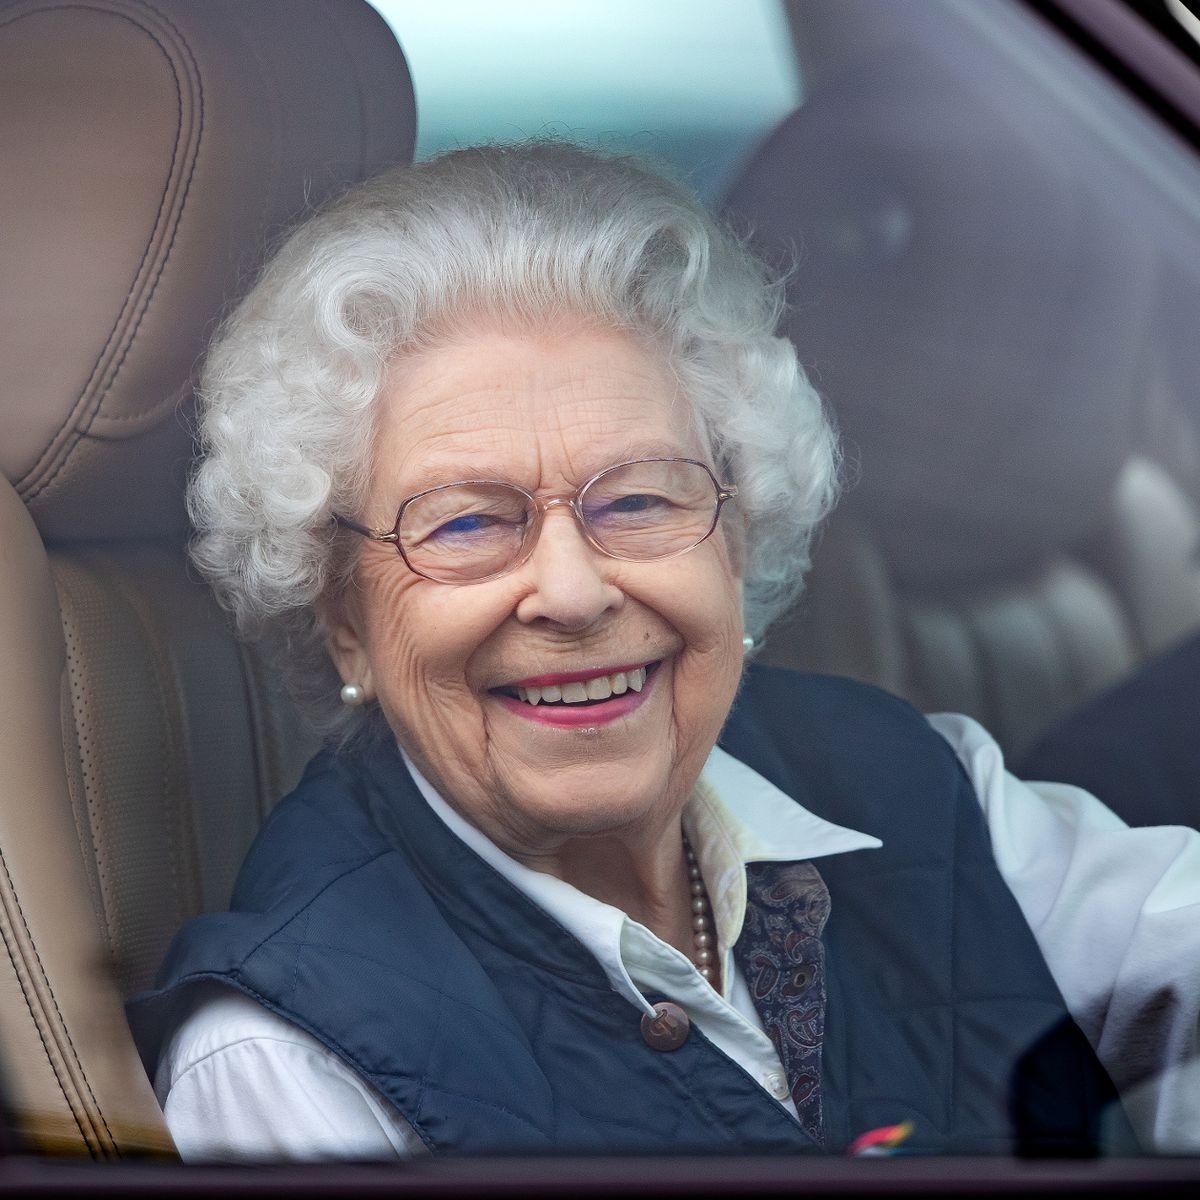 Чувствует себя моложе: 95-летняя королева Елизавета отказалась принимать премию "Старушка года" - фото №1